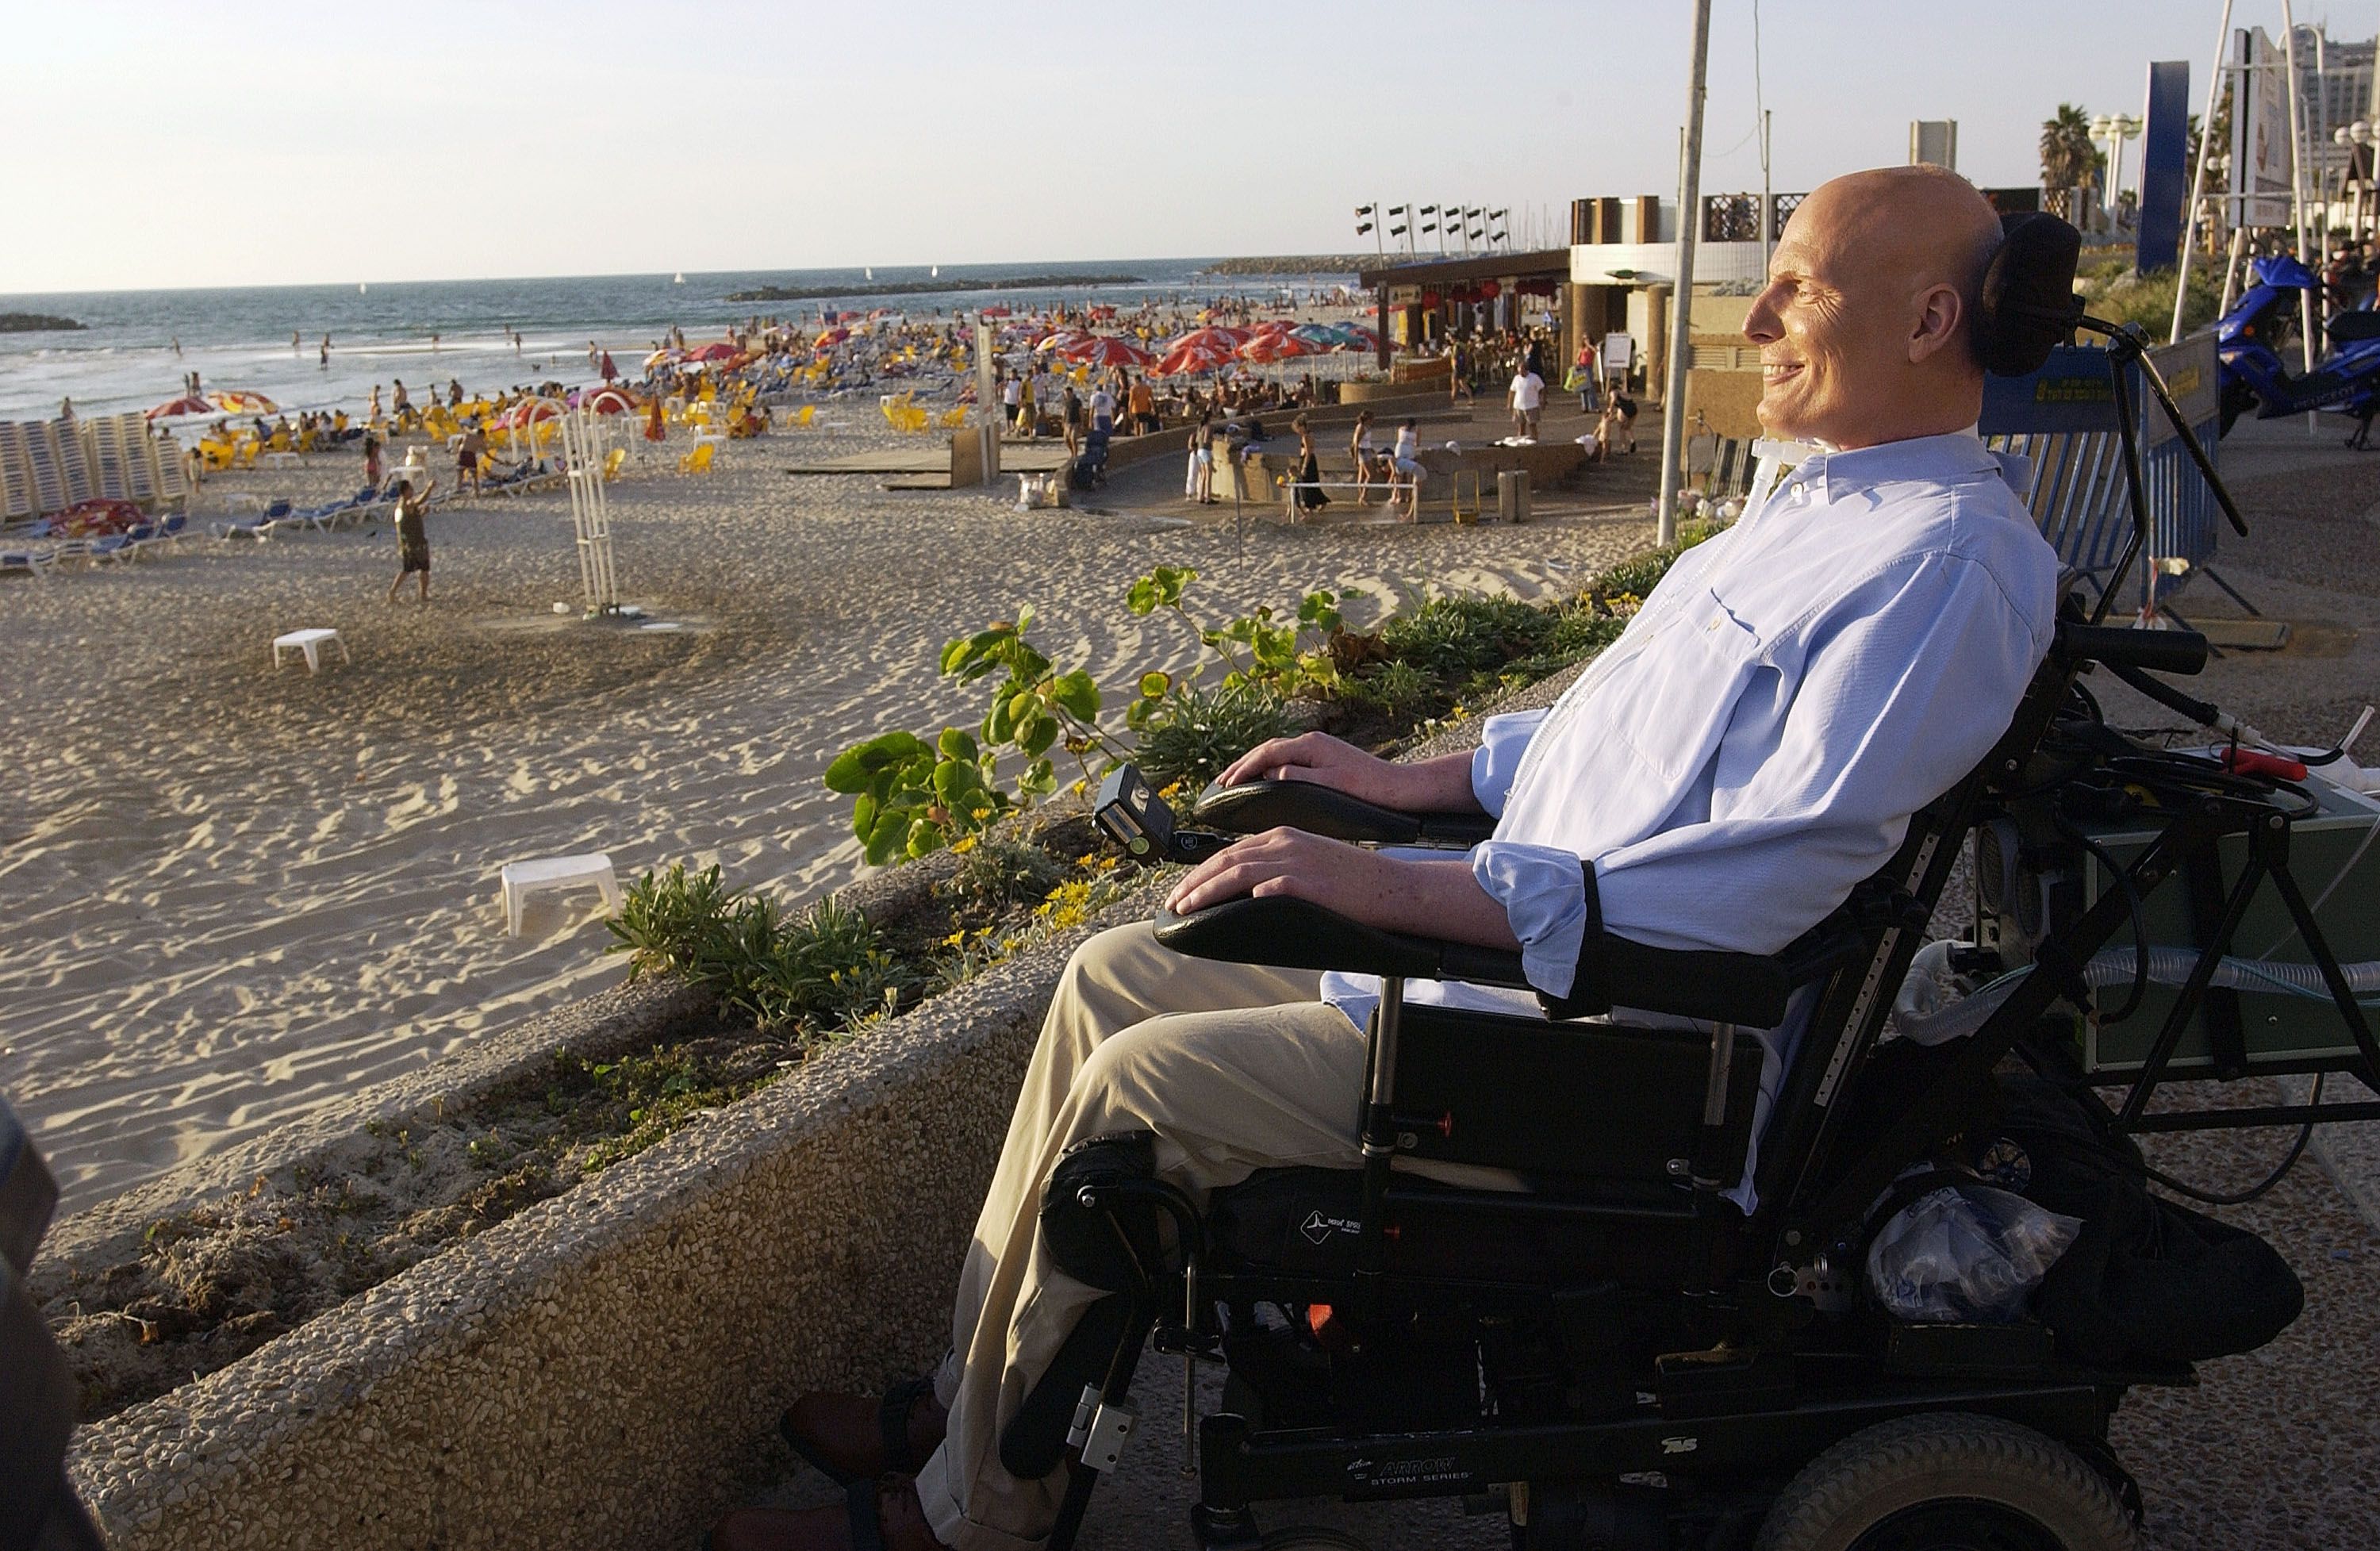 El ex actor Christopher Reeve disfruta de un momento de tranquilidad en el paseo marítimo con vistas al mar Mediterráneo el 1 de agosto de 2003 en Tel Aviv, Israel. Reeve se encuentra en una visita de cuatro días a Israel. (Foto de Israel Hadari-Pool / Getty Images)